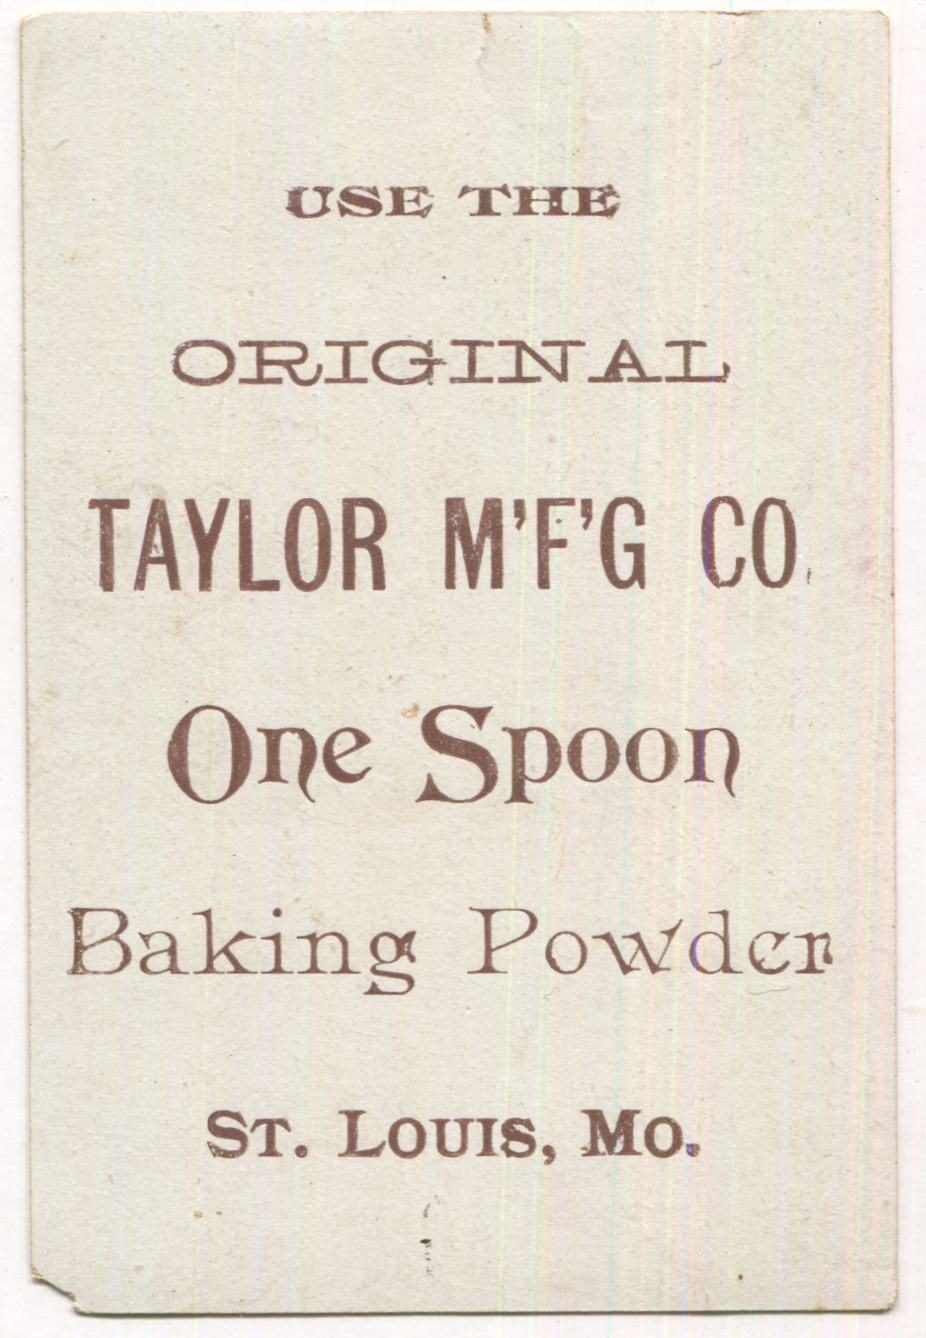 Taylor MFG Baking Powder, St Louis, MO Antique Trade Card - 3" x 4.25" (Pink)